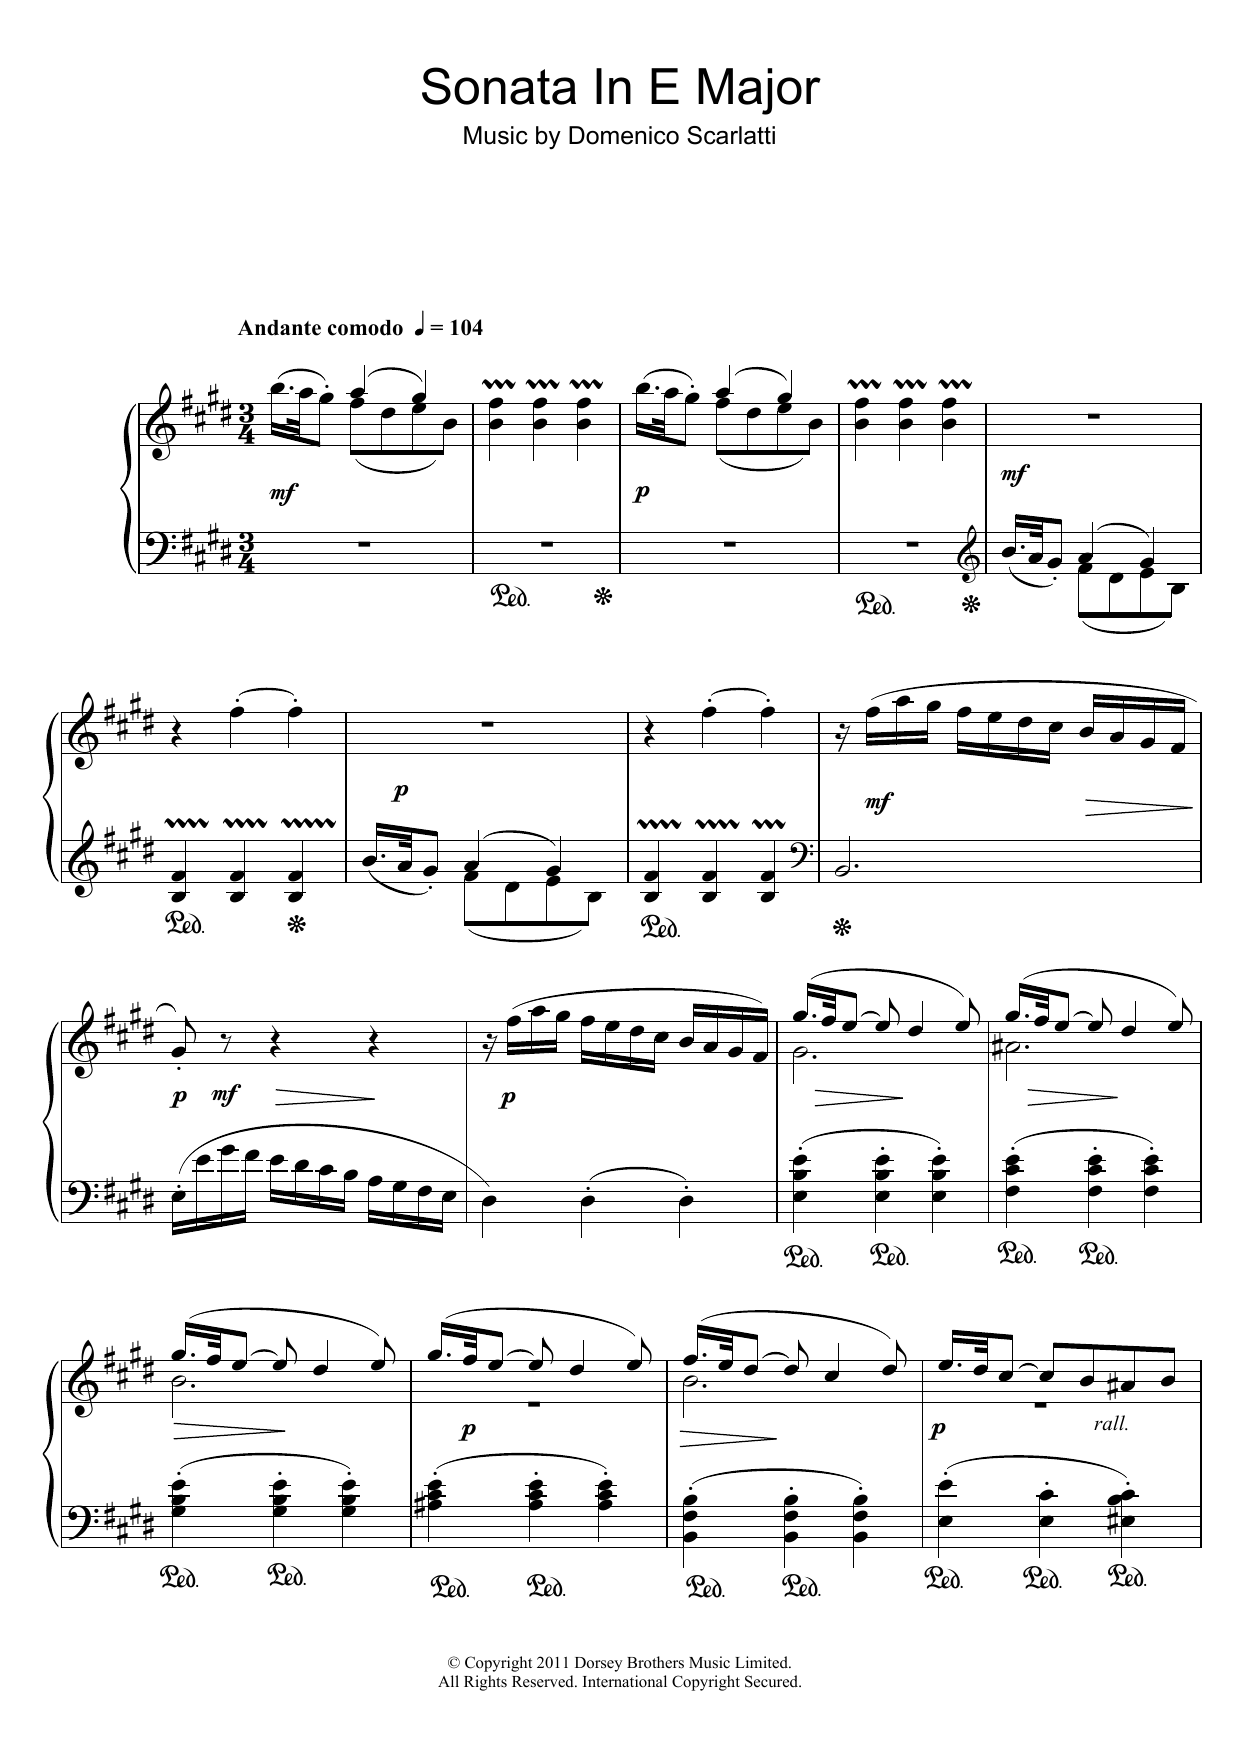 Download Domenico Scarlatti Sonata In E Major Sheet Music and learn how to play Piano PDF digital score in minutes